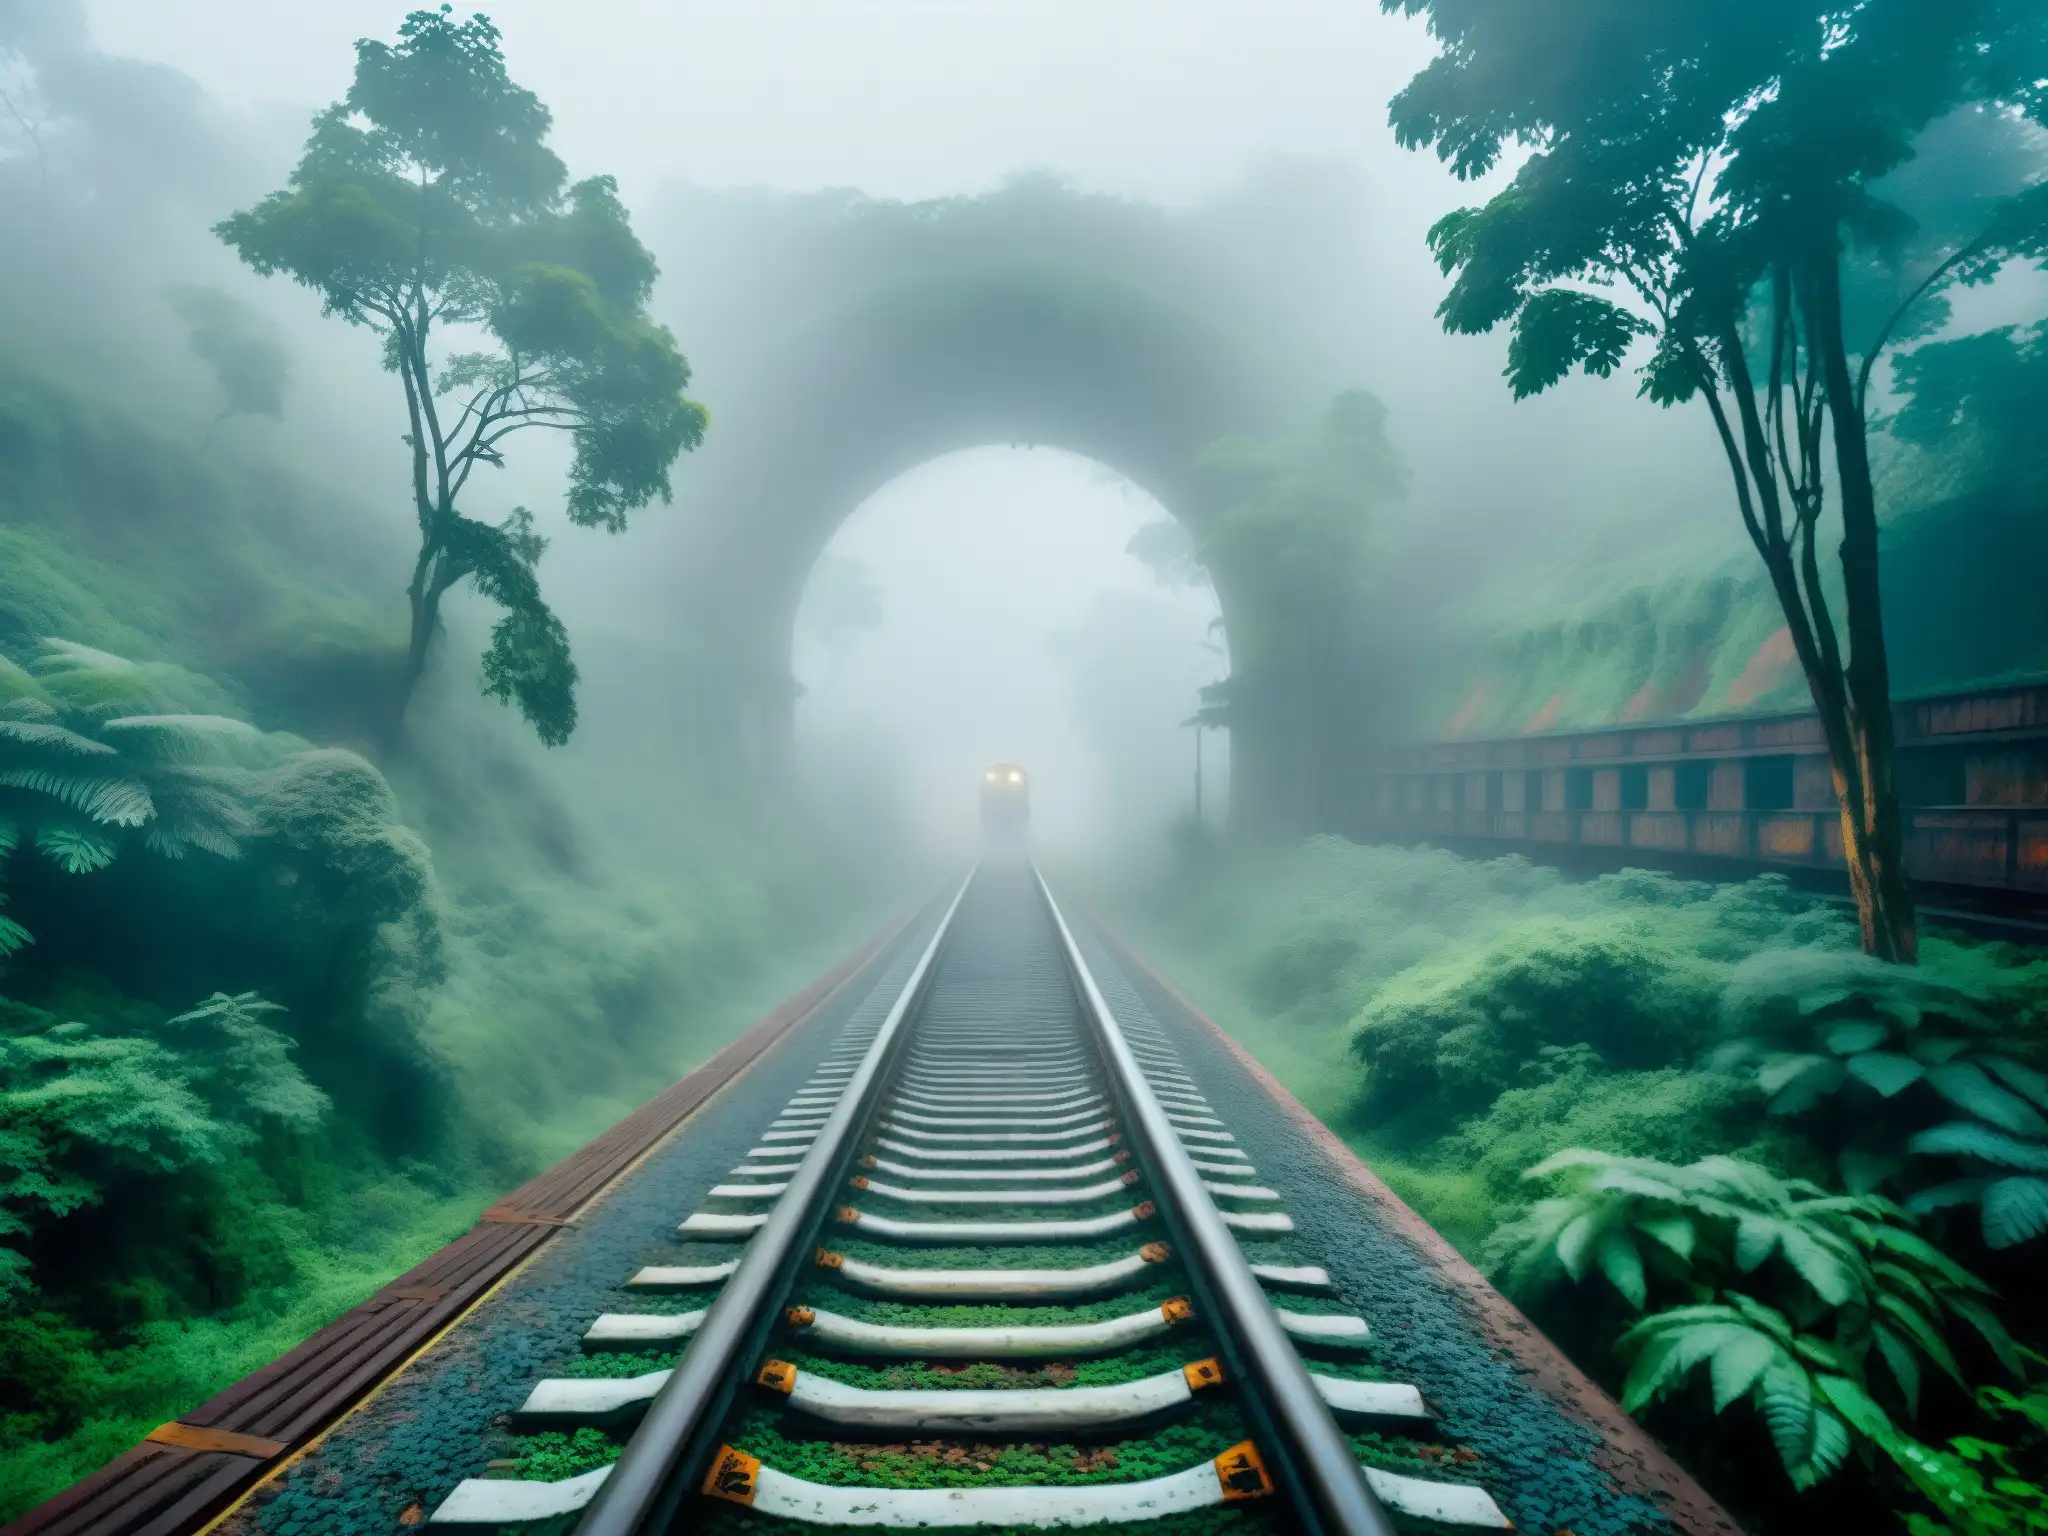 Un antiguo y misterioso tren fantasma se desvanece en la densa niebla de un bosque de la India